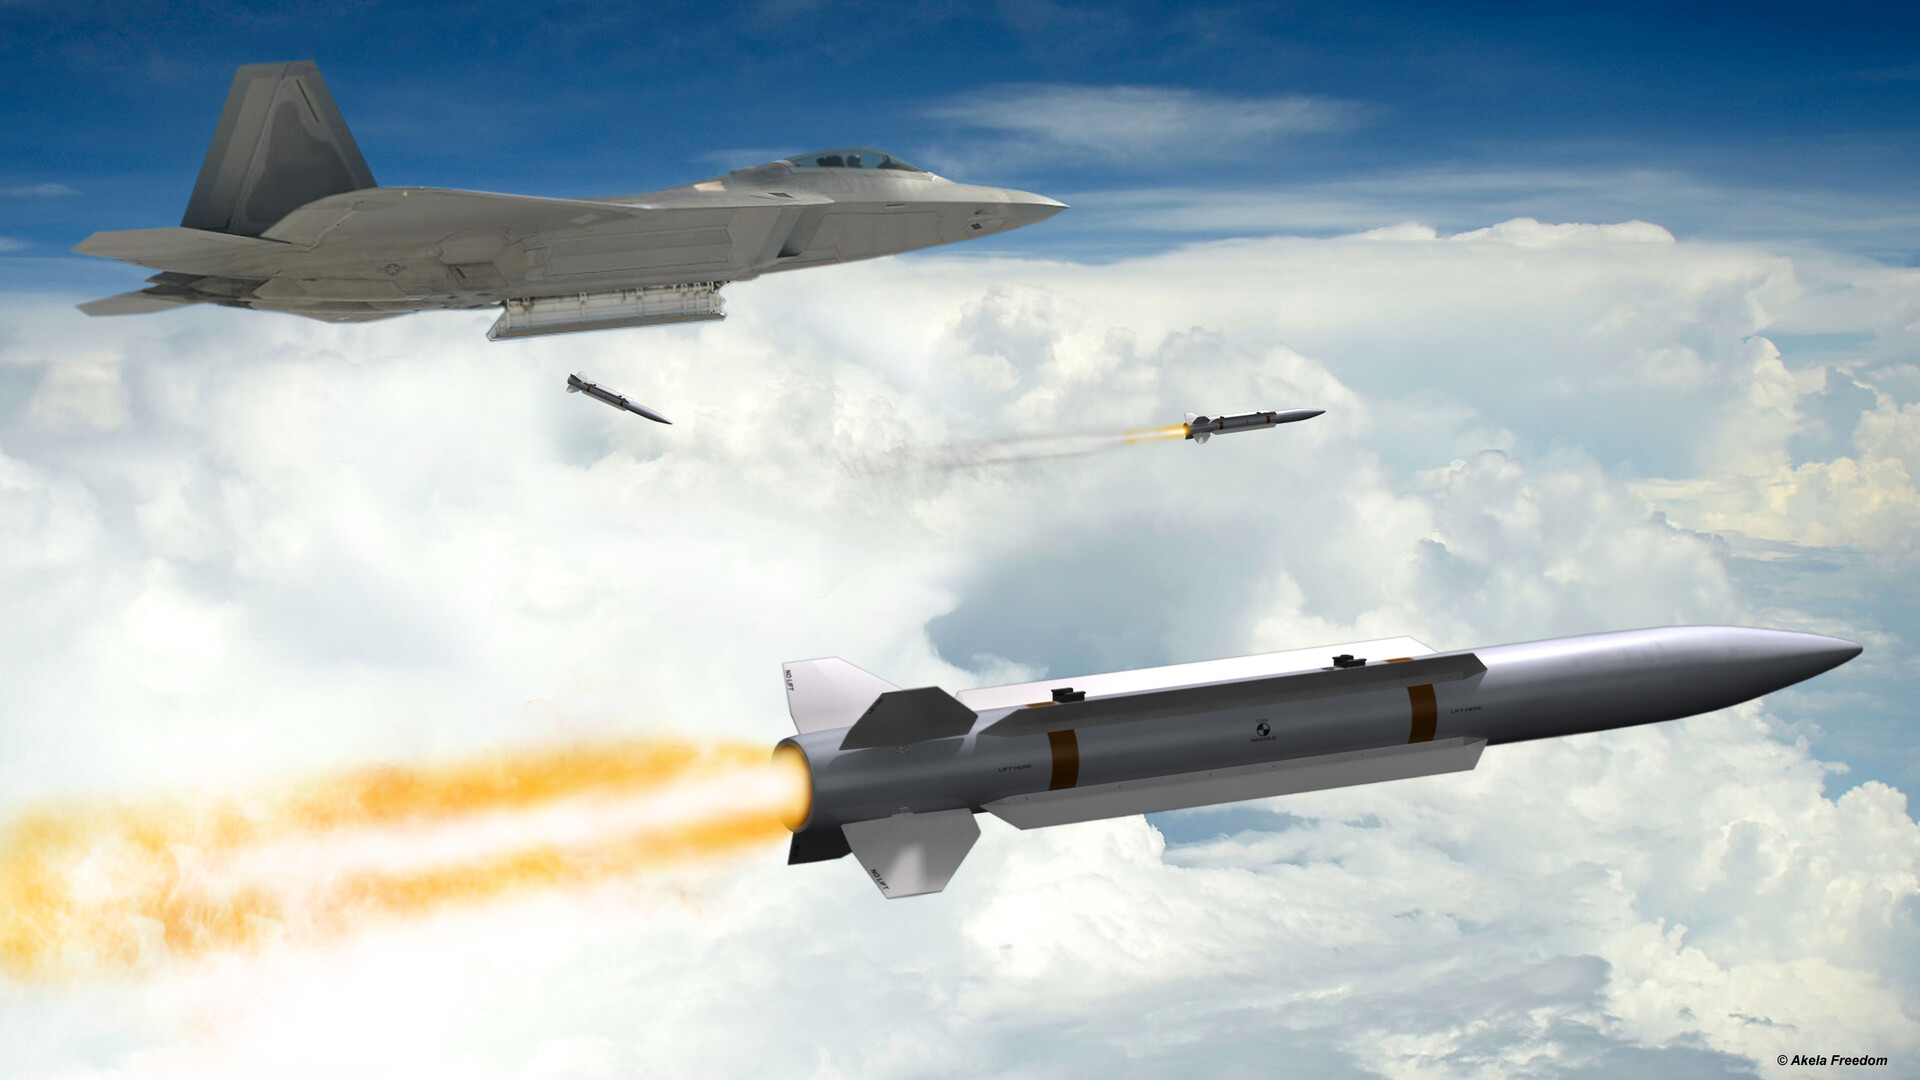 Raytheon erhält 21 Millionen Dollar für die Entwicklung von Luft-Luft-Raketen der nächsten Generation als Ersatz für AIM-120 AMRAAM und AIM-9X Sidewinder